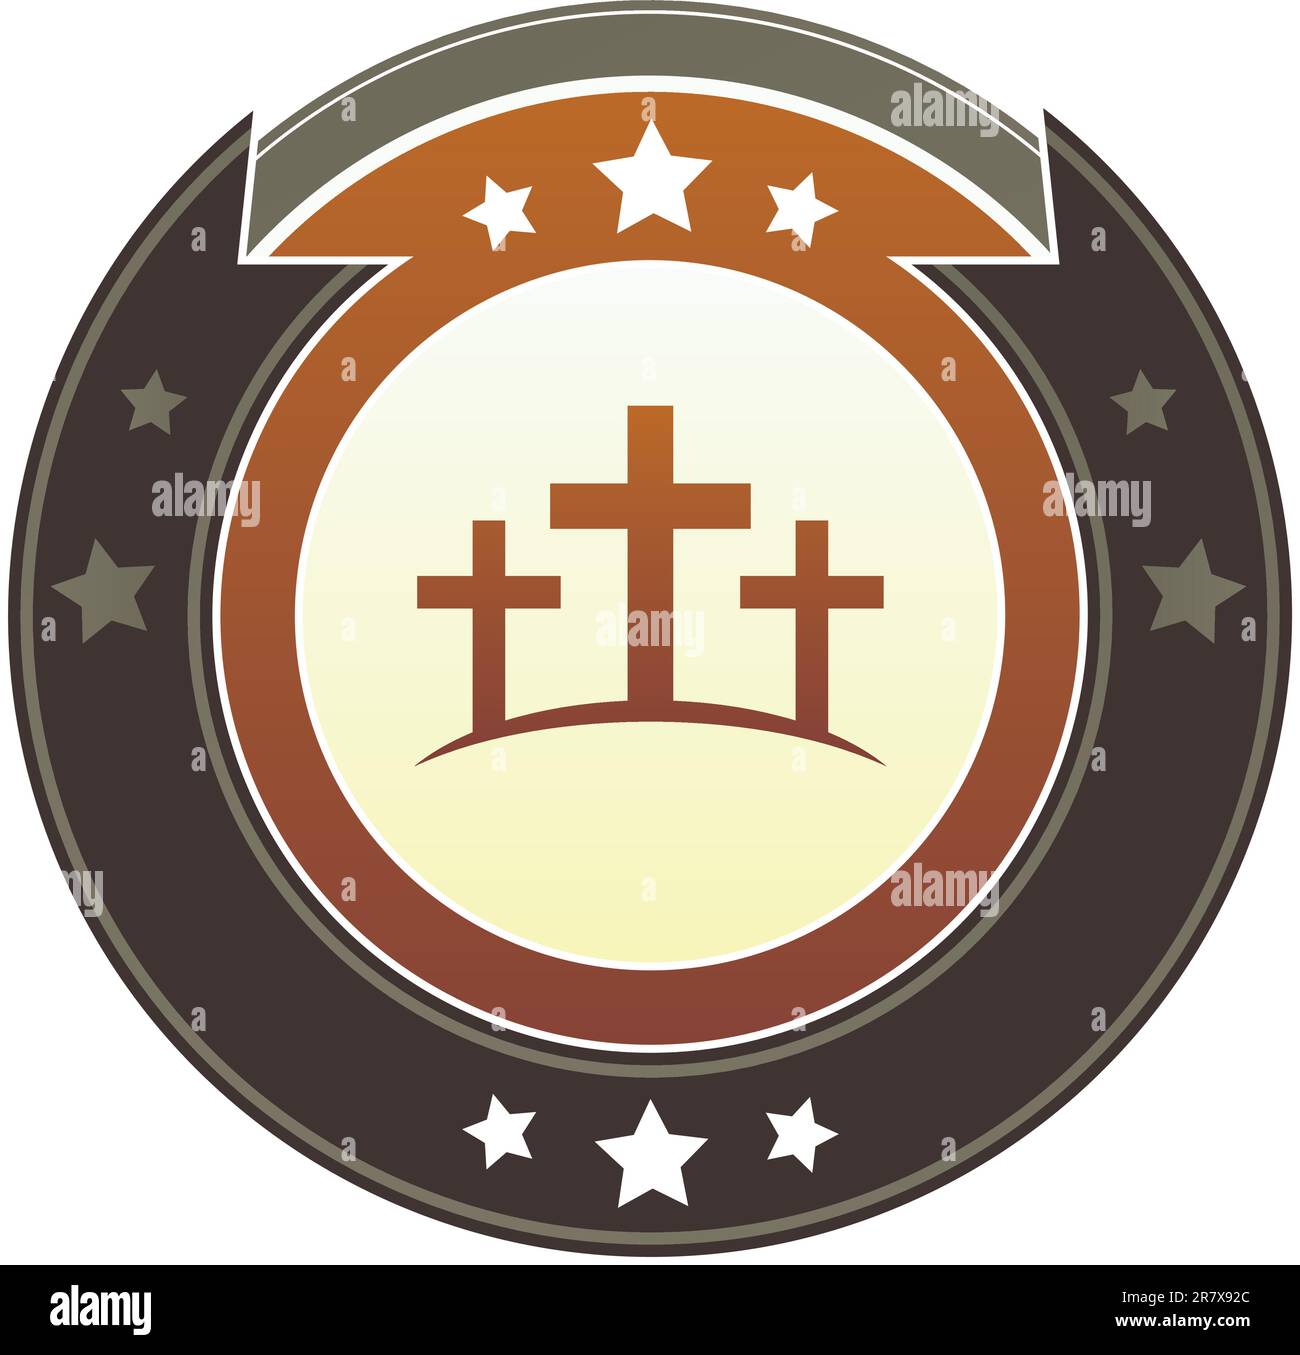 Christliches Kreuz oder Symbol von Calgary auf einem runden roten und braunen kaiserlichen Vektorknopf mit Sternakzenten Stock Vektor